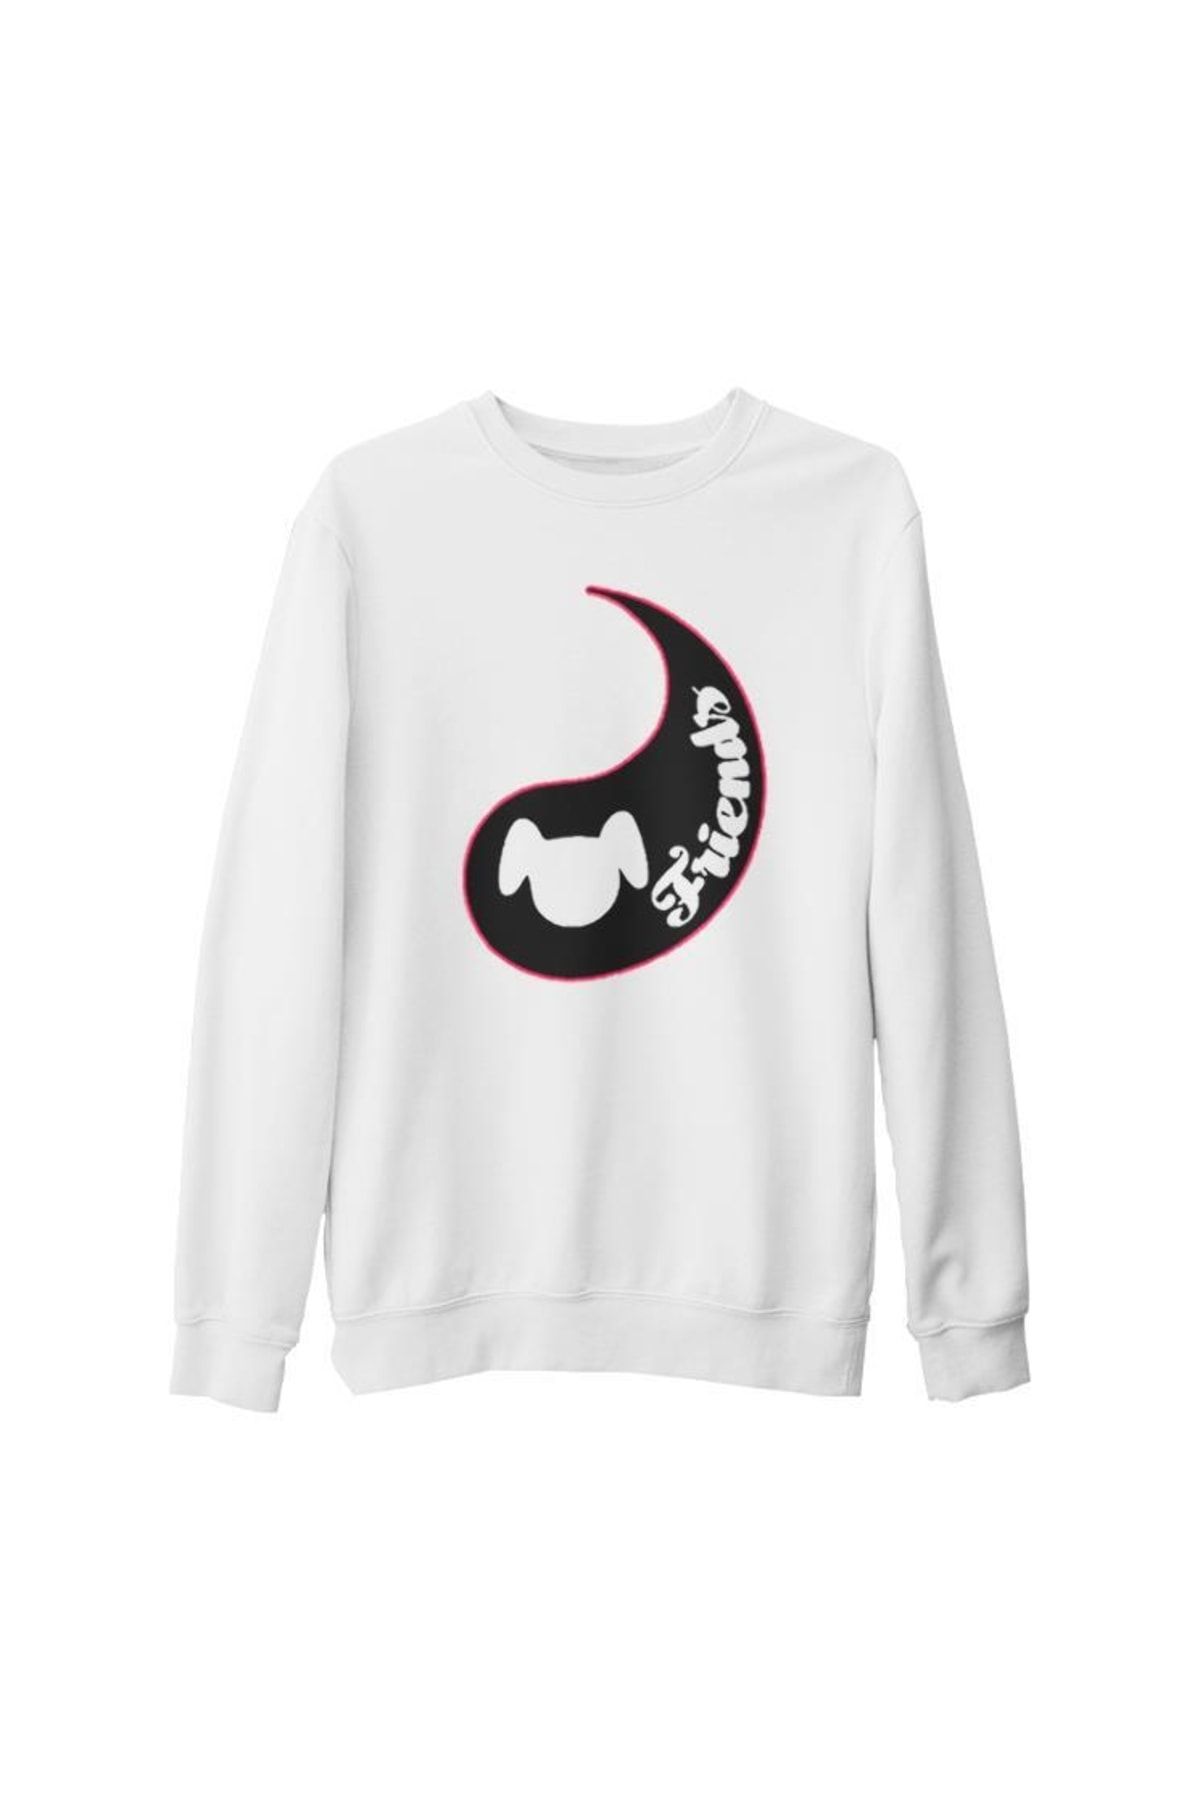 Lord T-Shirt Unisex Beyaz Best Friends  Köpek Kalın Sweatshirt